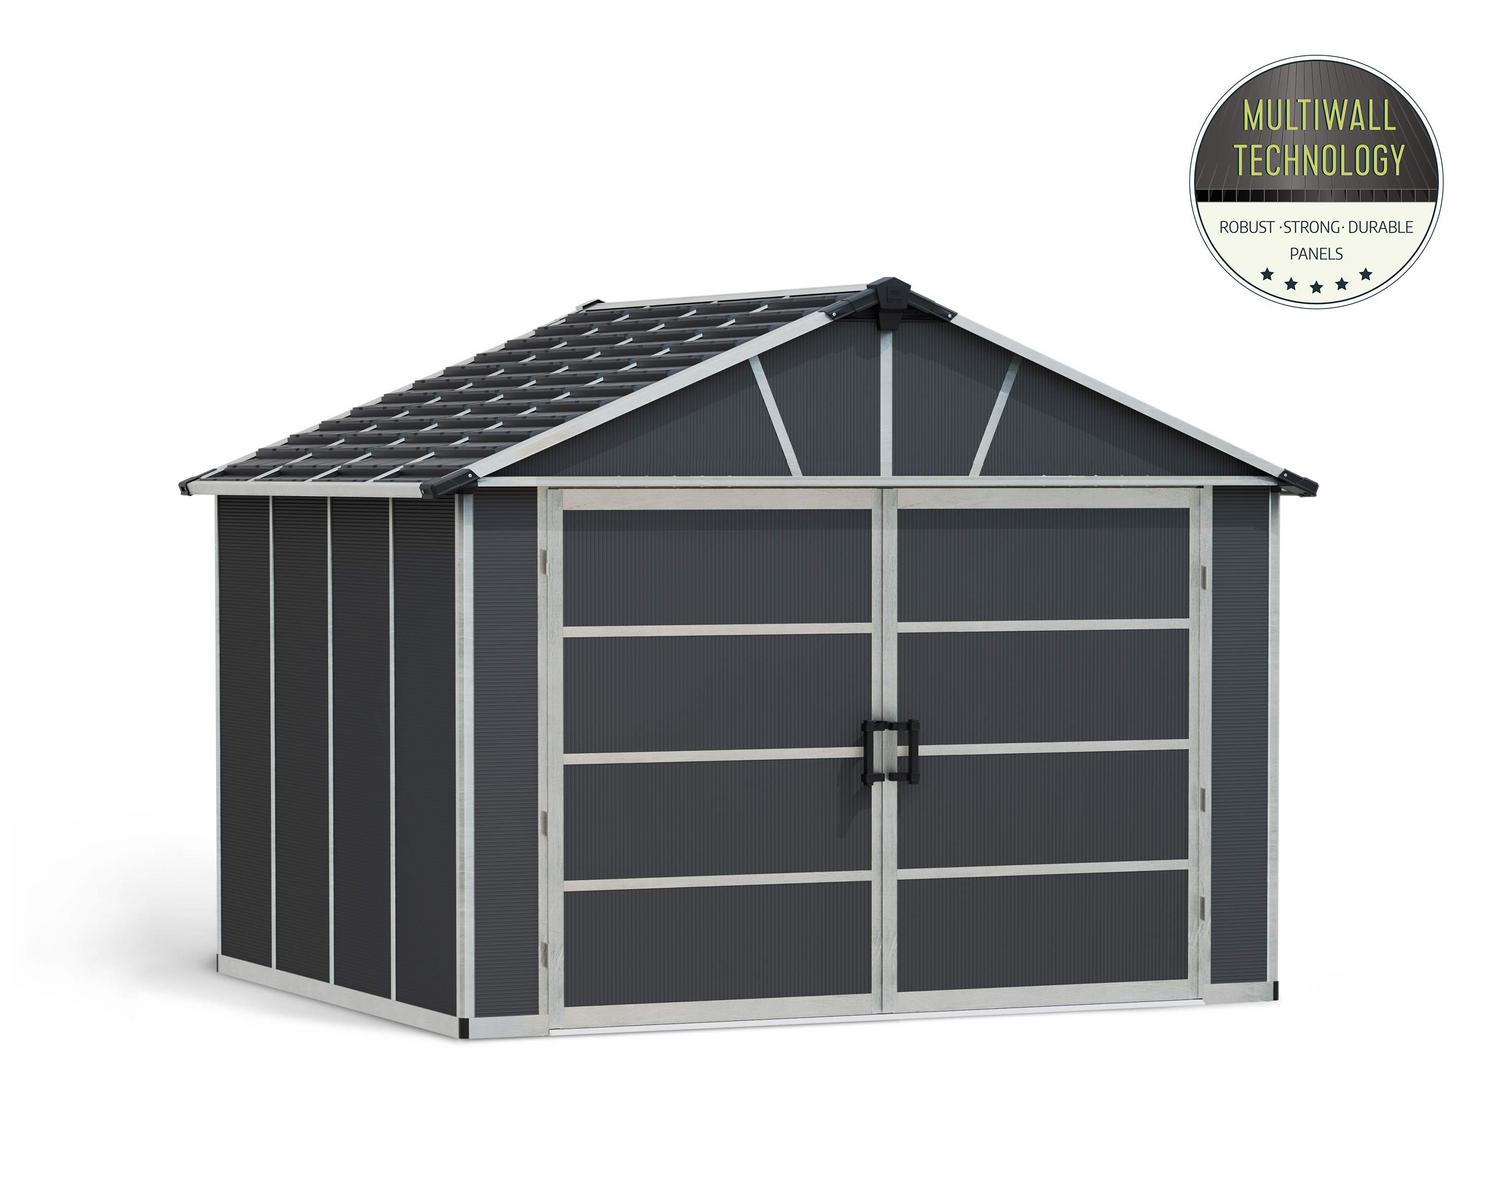 Garage Shed Kit Yukon 11 ft. x 9 ft. Grey Structure